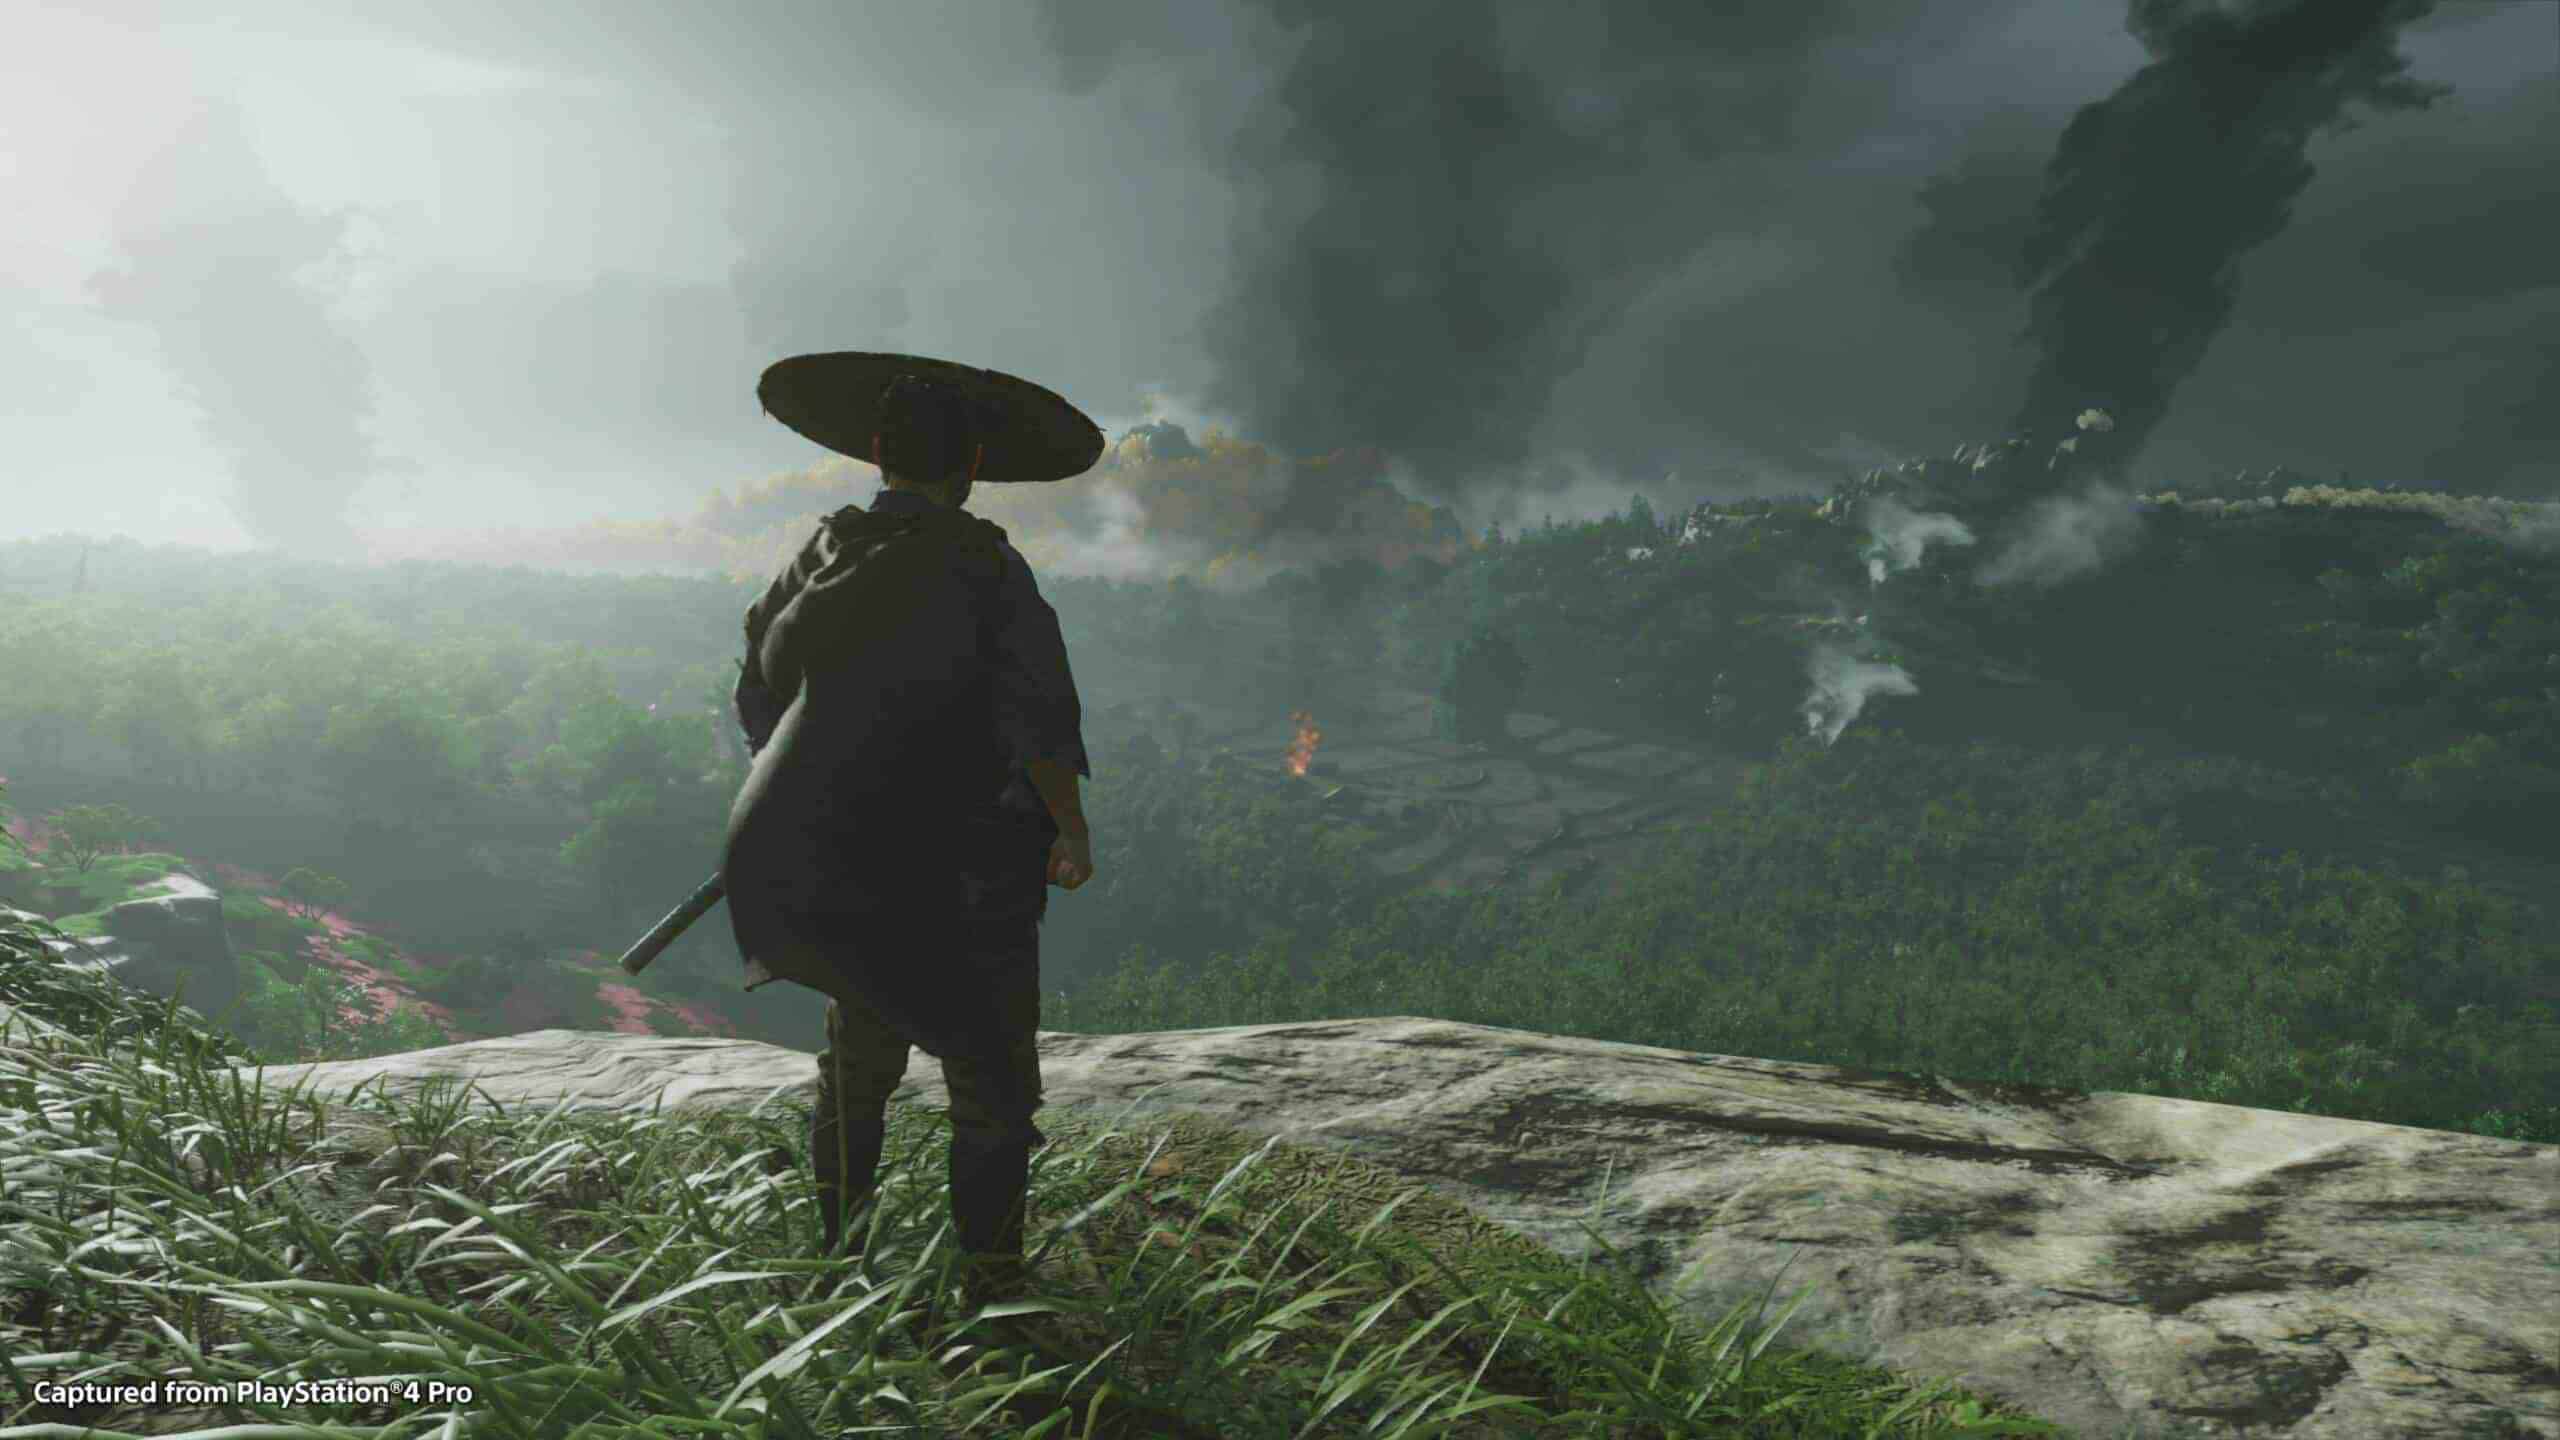 Ghost of Tsushima Review – De iconische stijl van Kurosawa in een game?